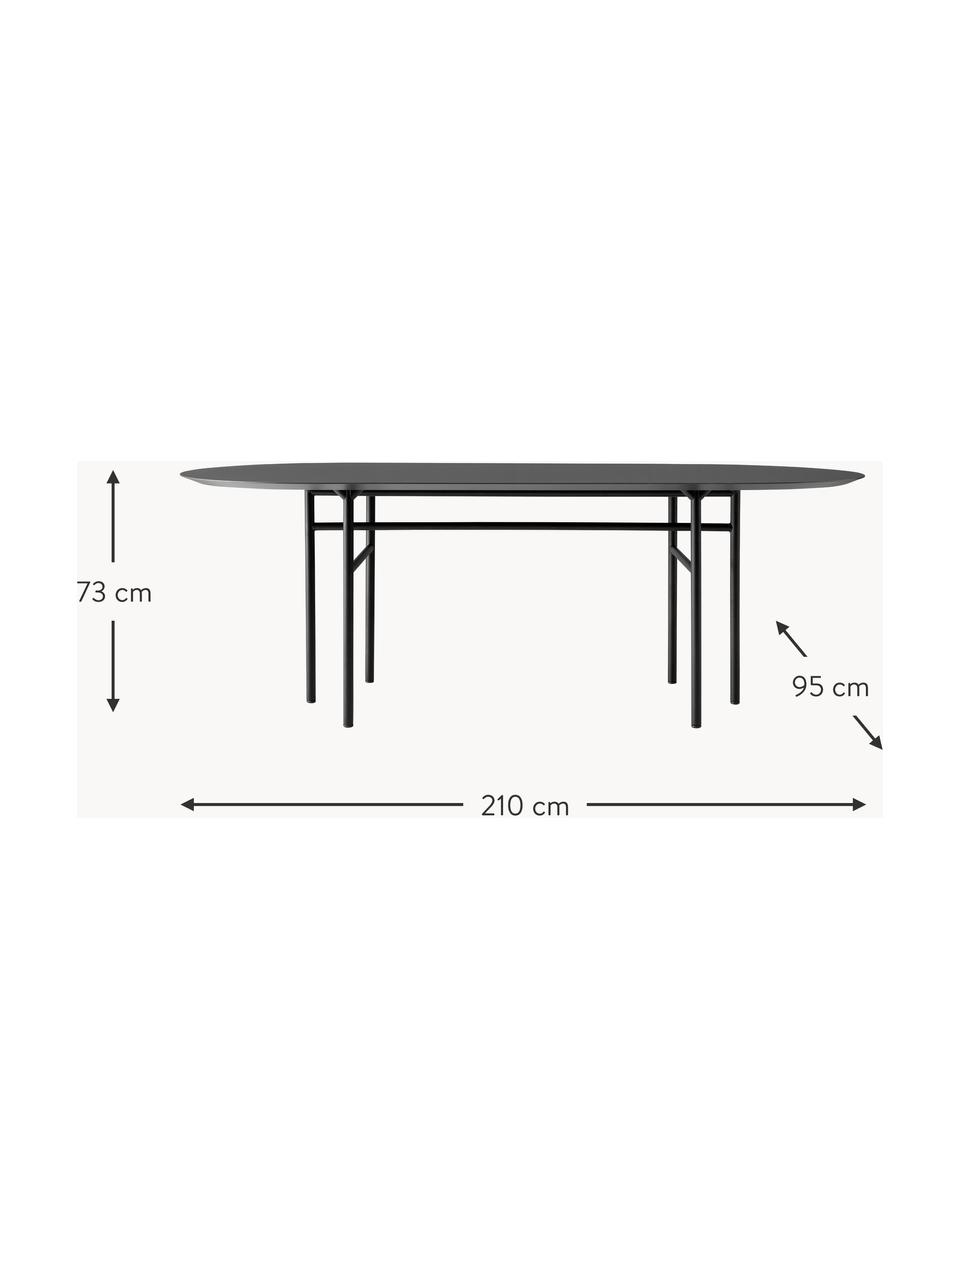 Oválný jídelní stůl Snaregade, 210 x 95 cm, Antracitová, černá matná, Š 210 cm, H 95 cm